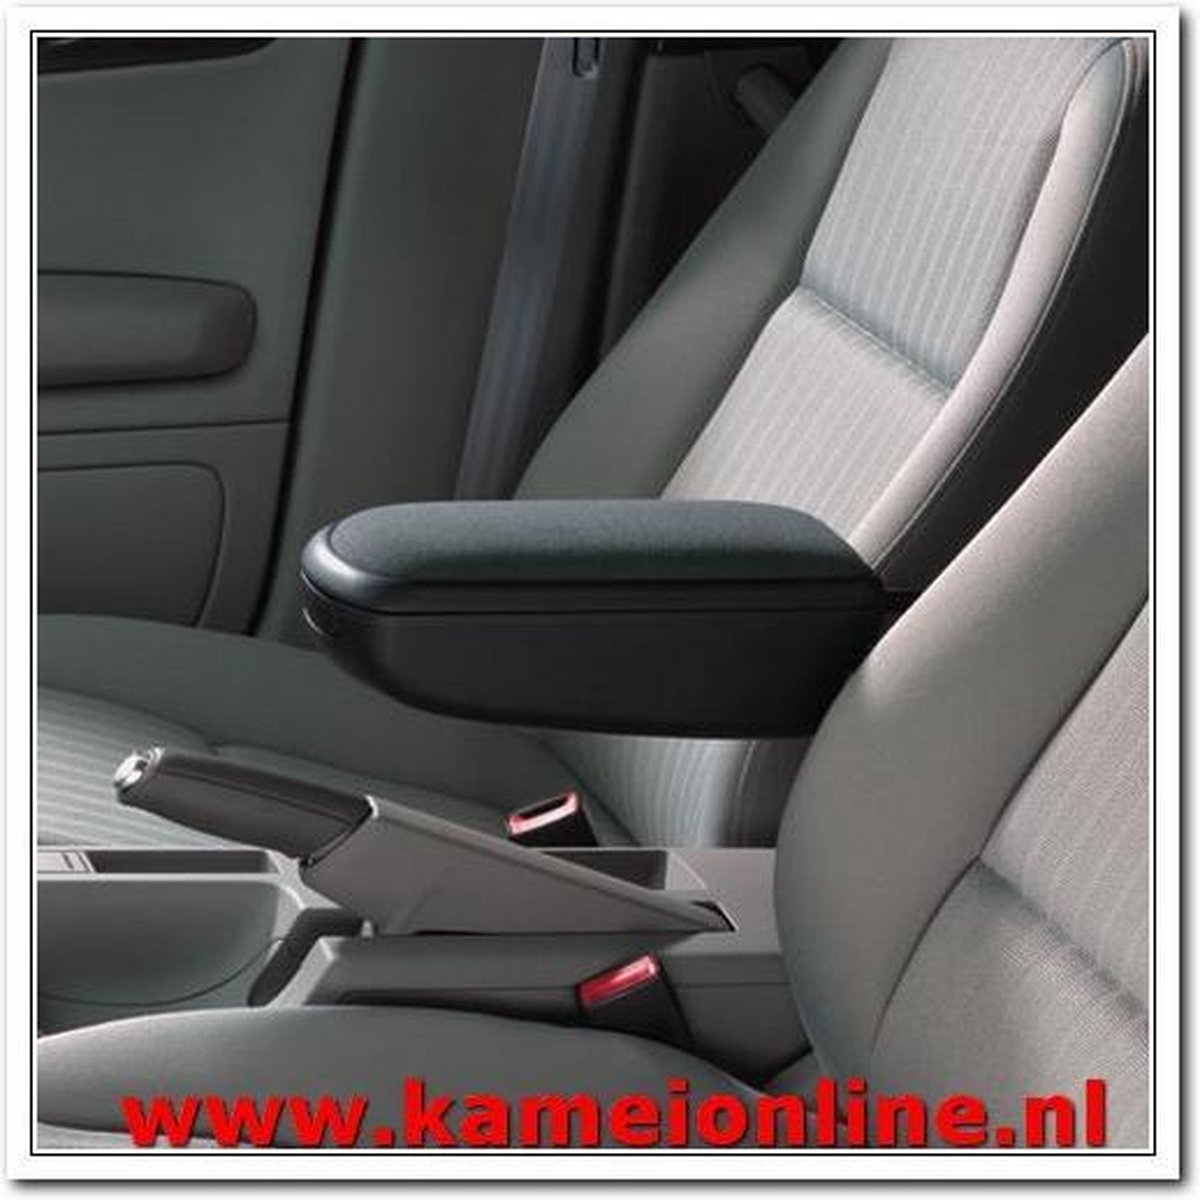 Armsteun Kamei Nissan Micra stof Premium zwart 2003-2016